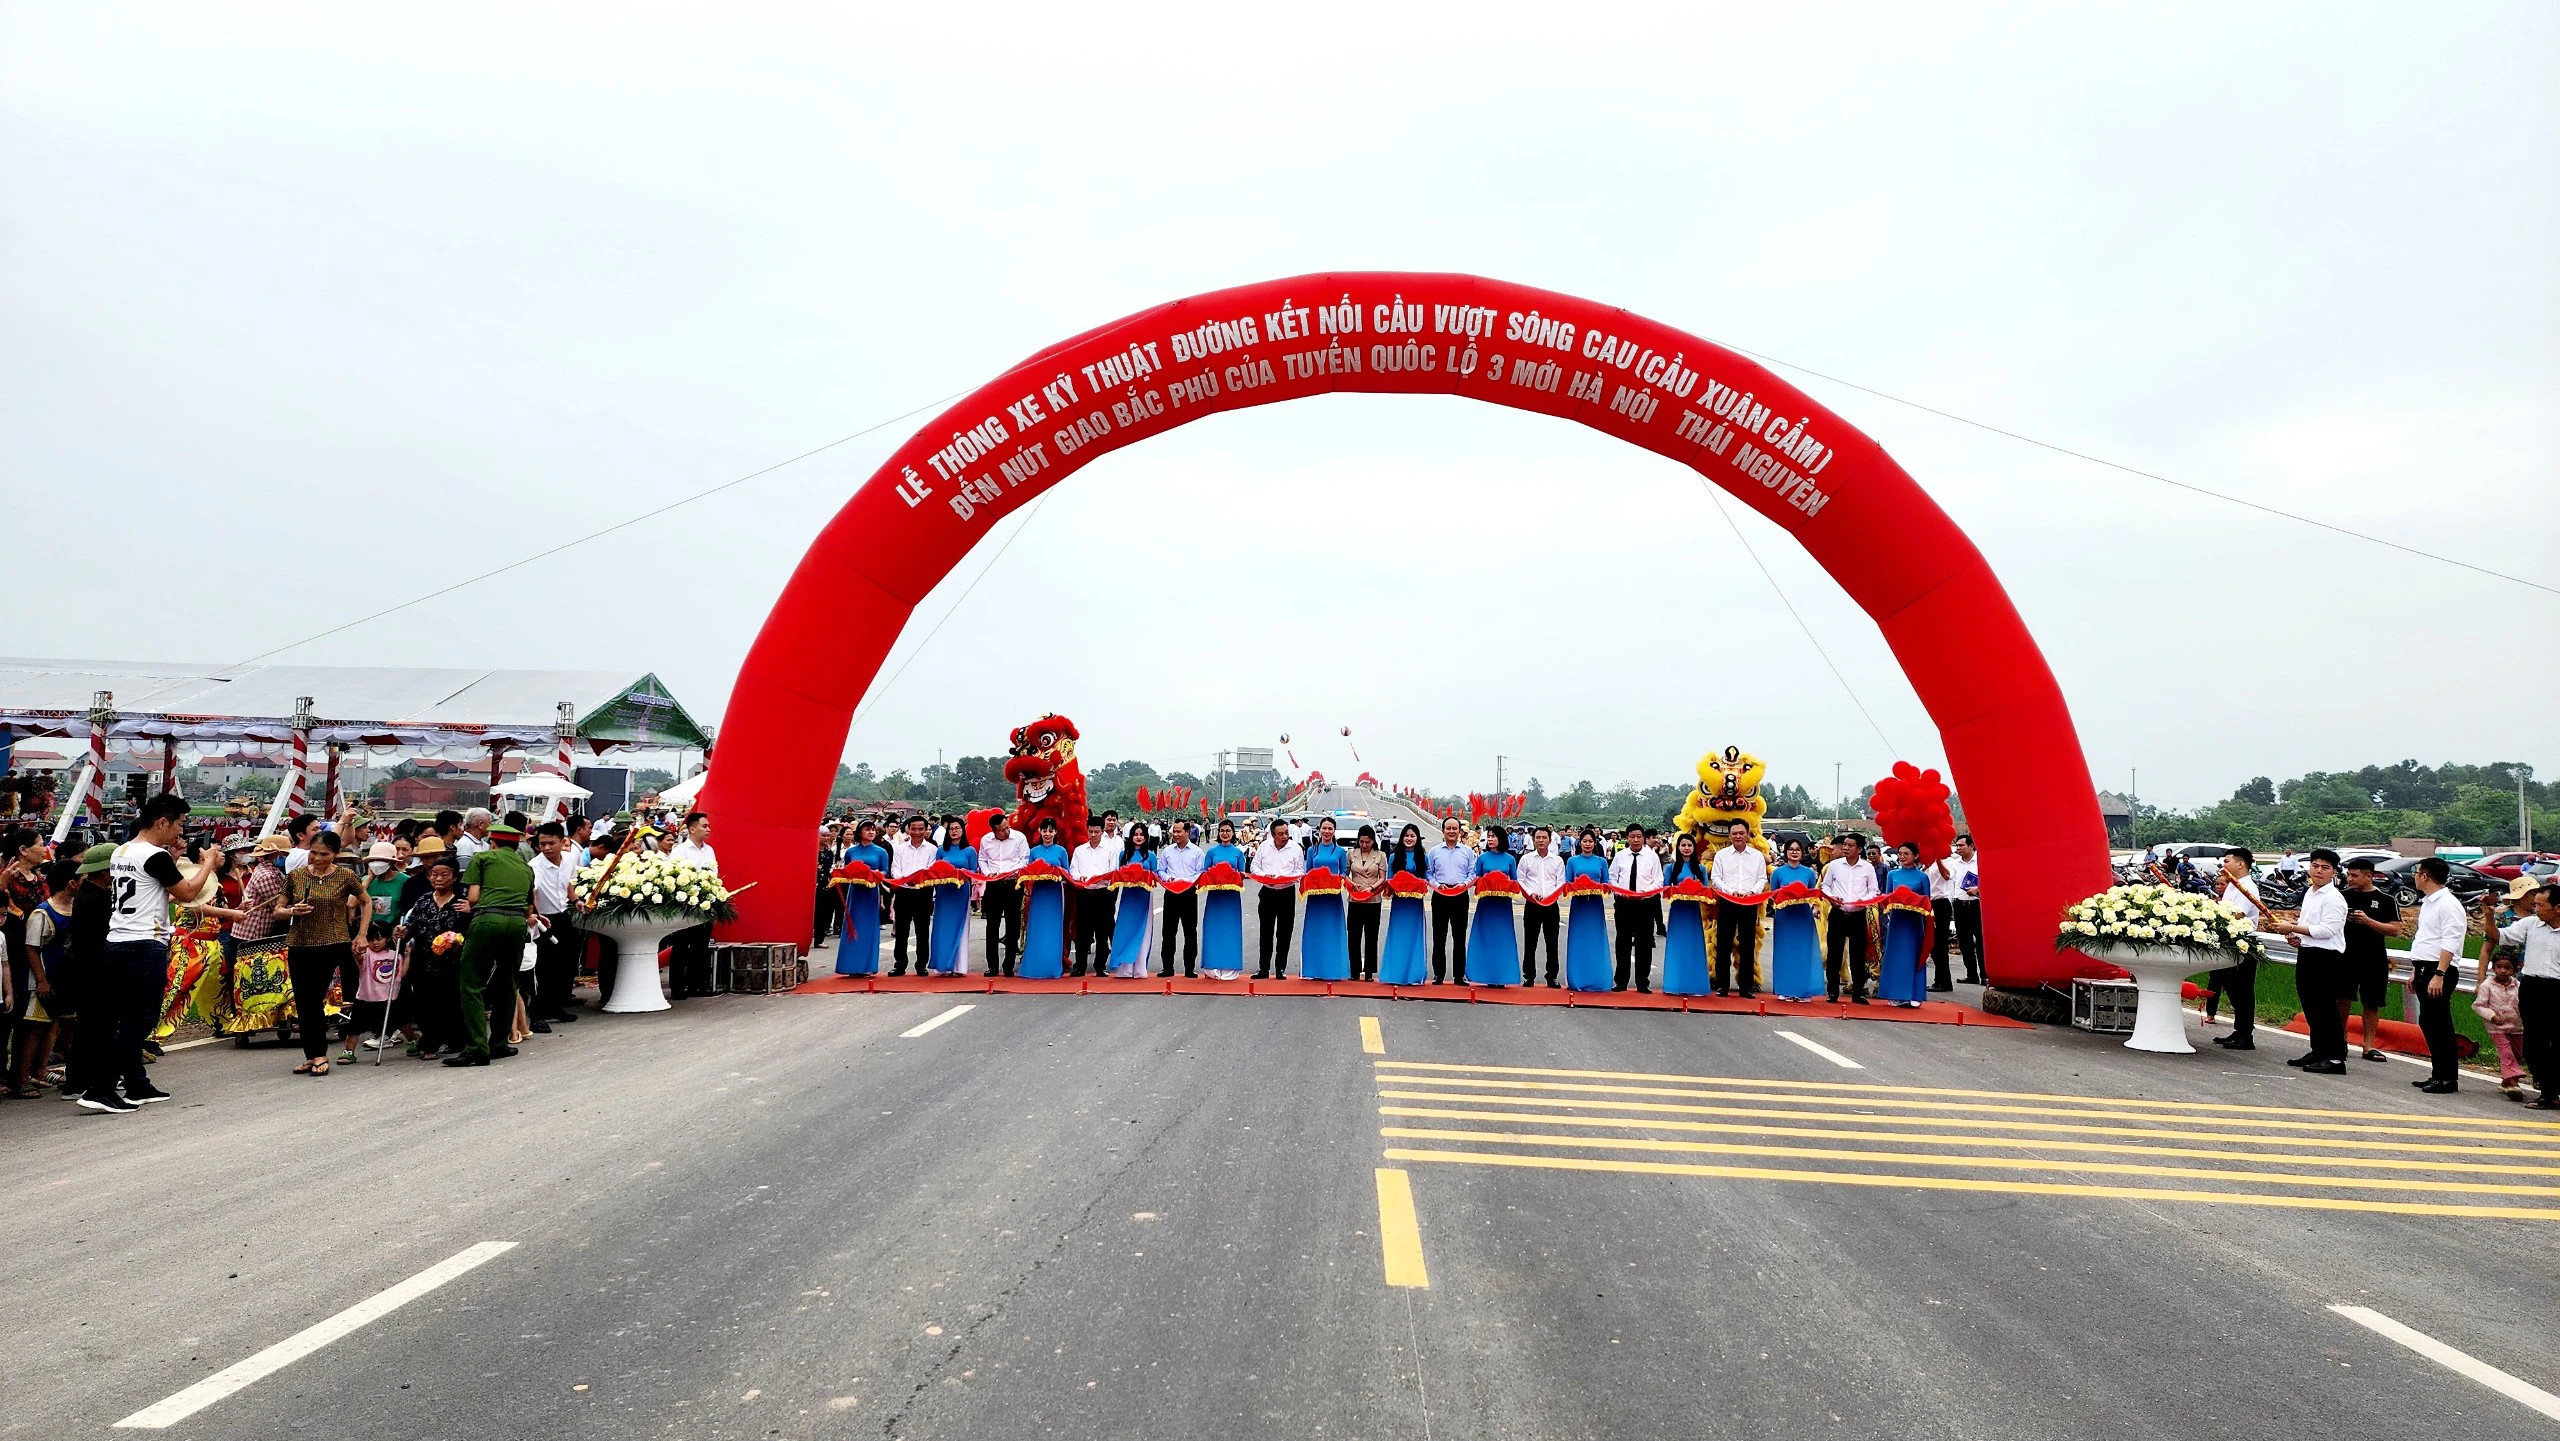 Đường gần 200 tỷ đồng kết nối vùng Hà Nội - Bắc Giang chính thức thông xe